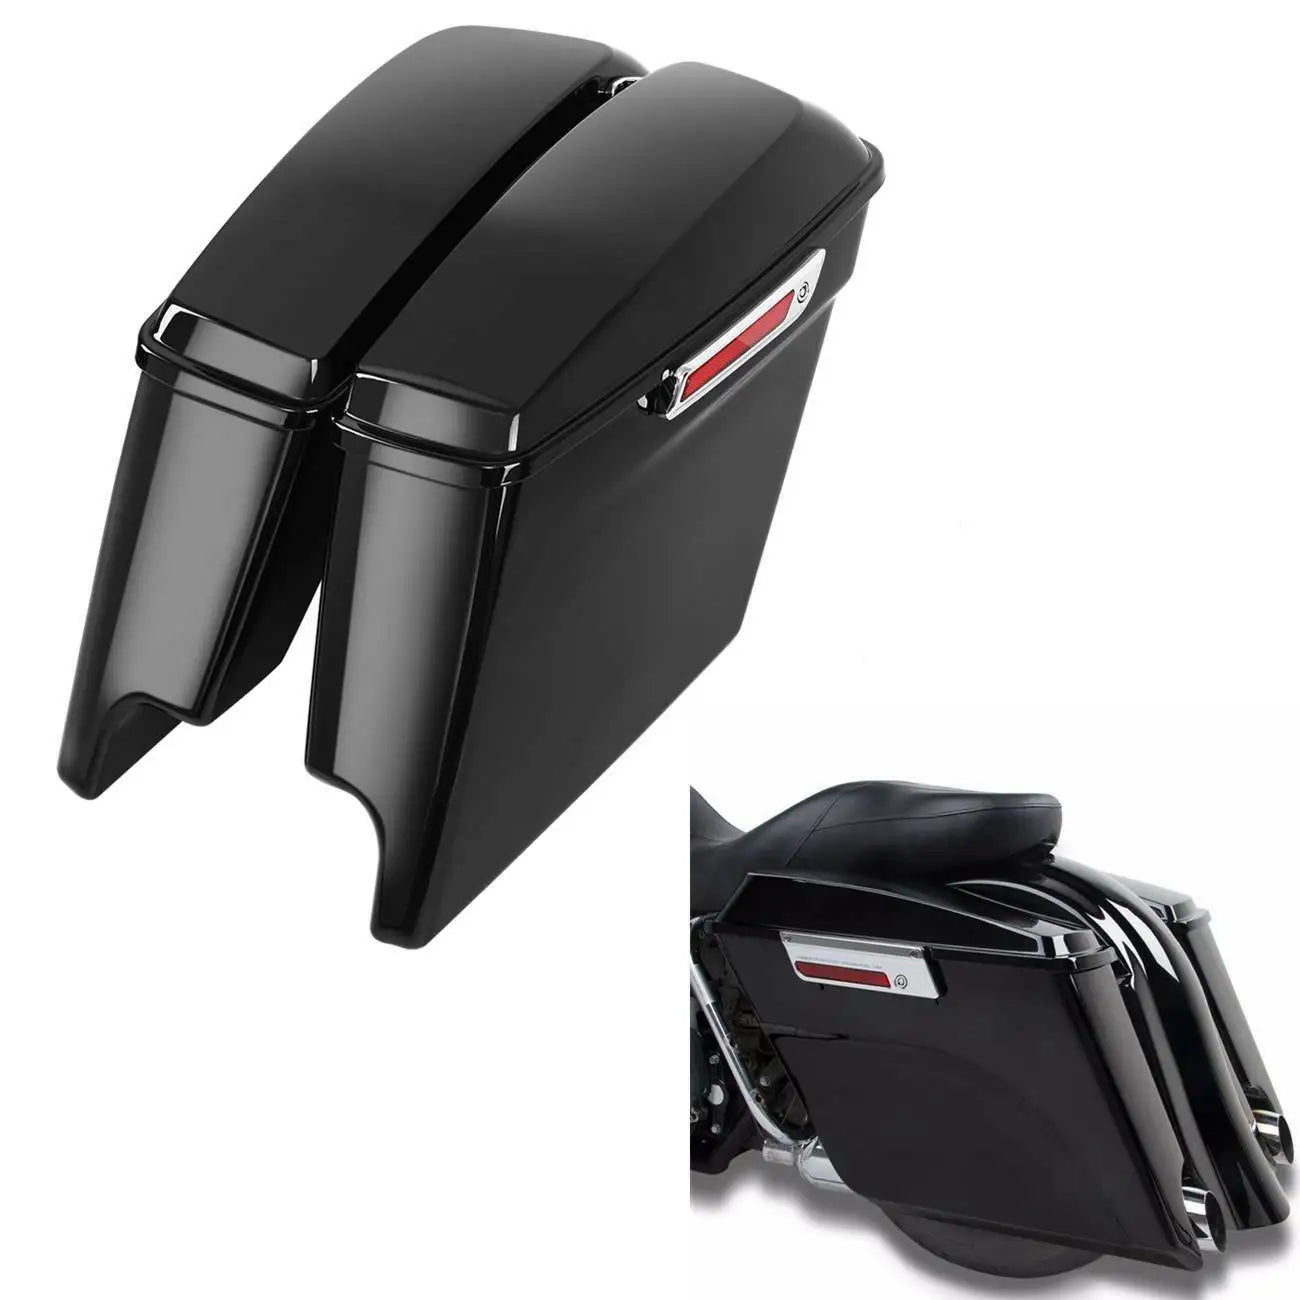 Motorrad-Satteltaschen, gestrecktes Design, passend für Harley Touring Modelle